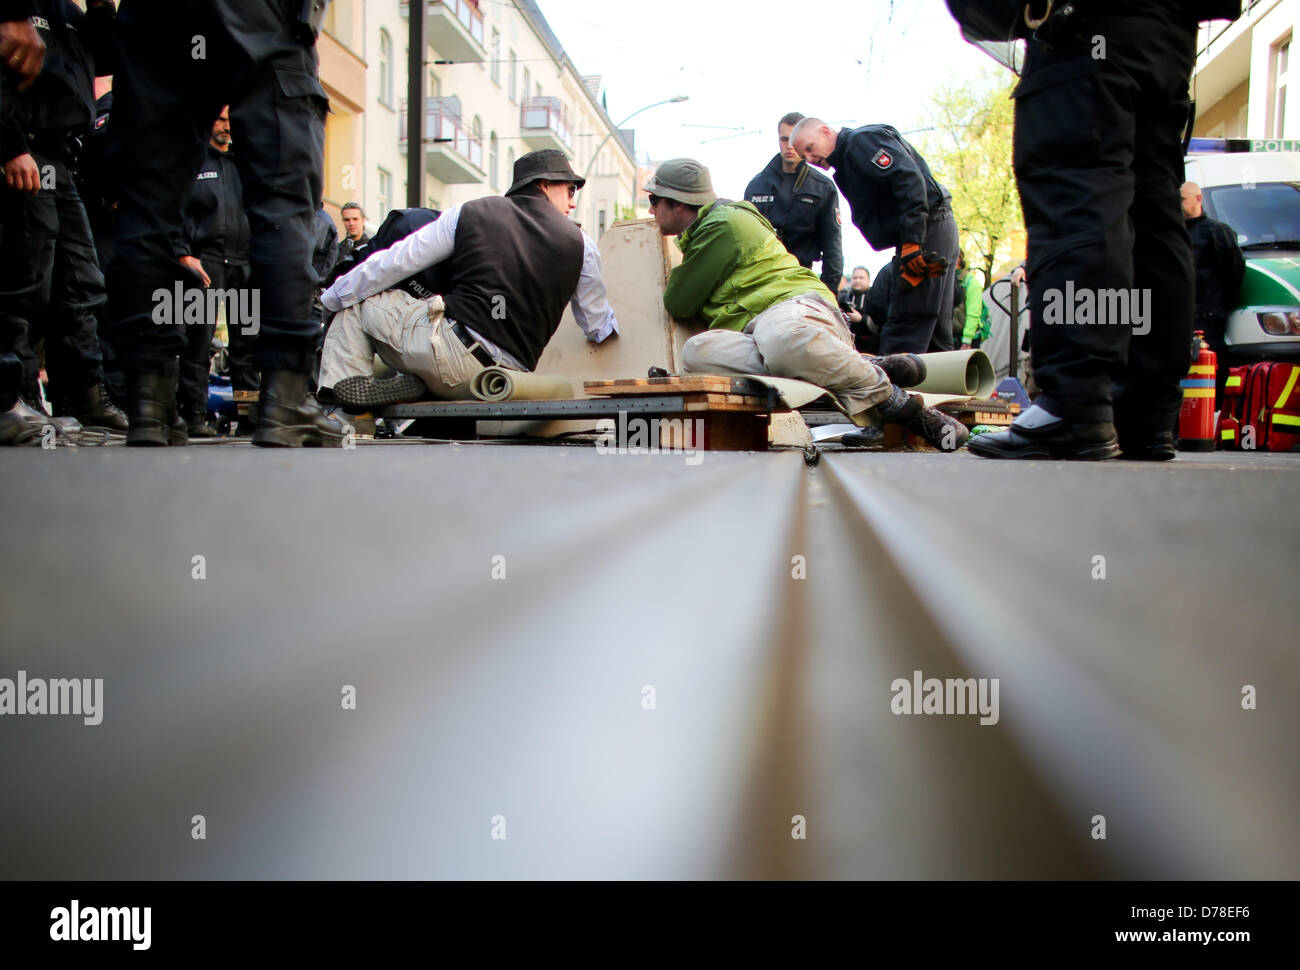 Incatenati a una piramide in calcestruzzo attivisti bloccano la strada prima di un rally di estrema destra NPD Schoeneweide nel distretto di Berlino, Germania, 01 maggio 2013. Foto: KAY NIETFELD Foto Stock